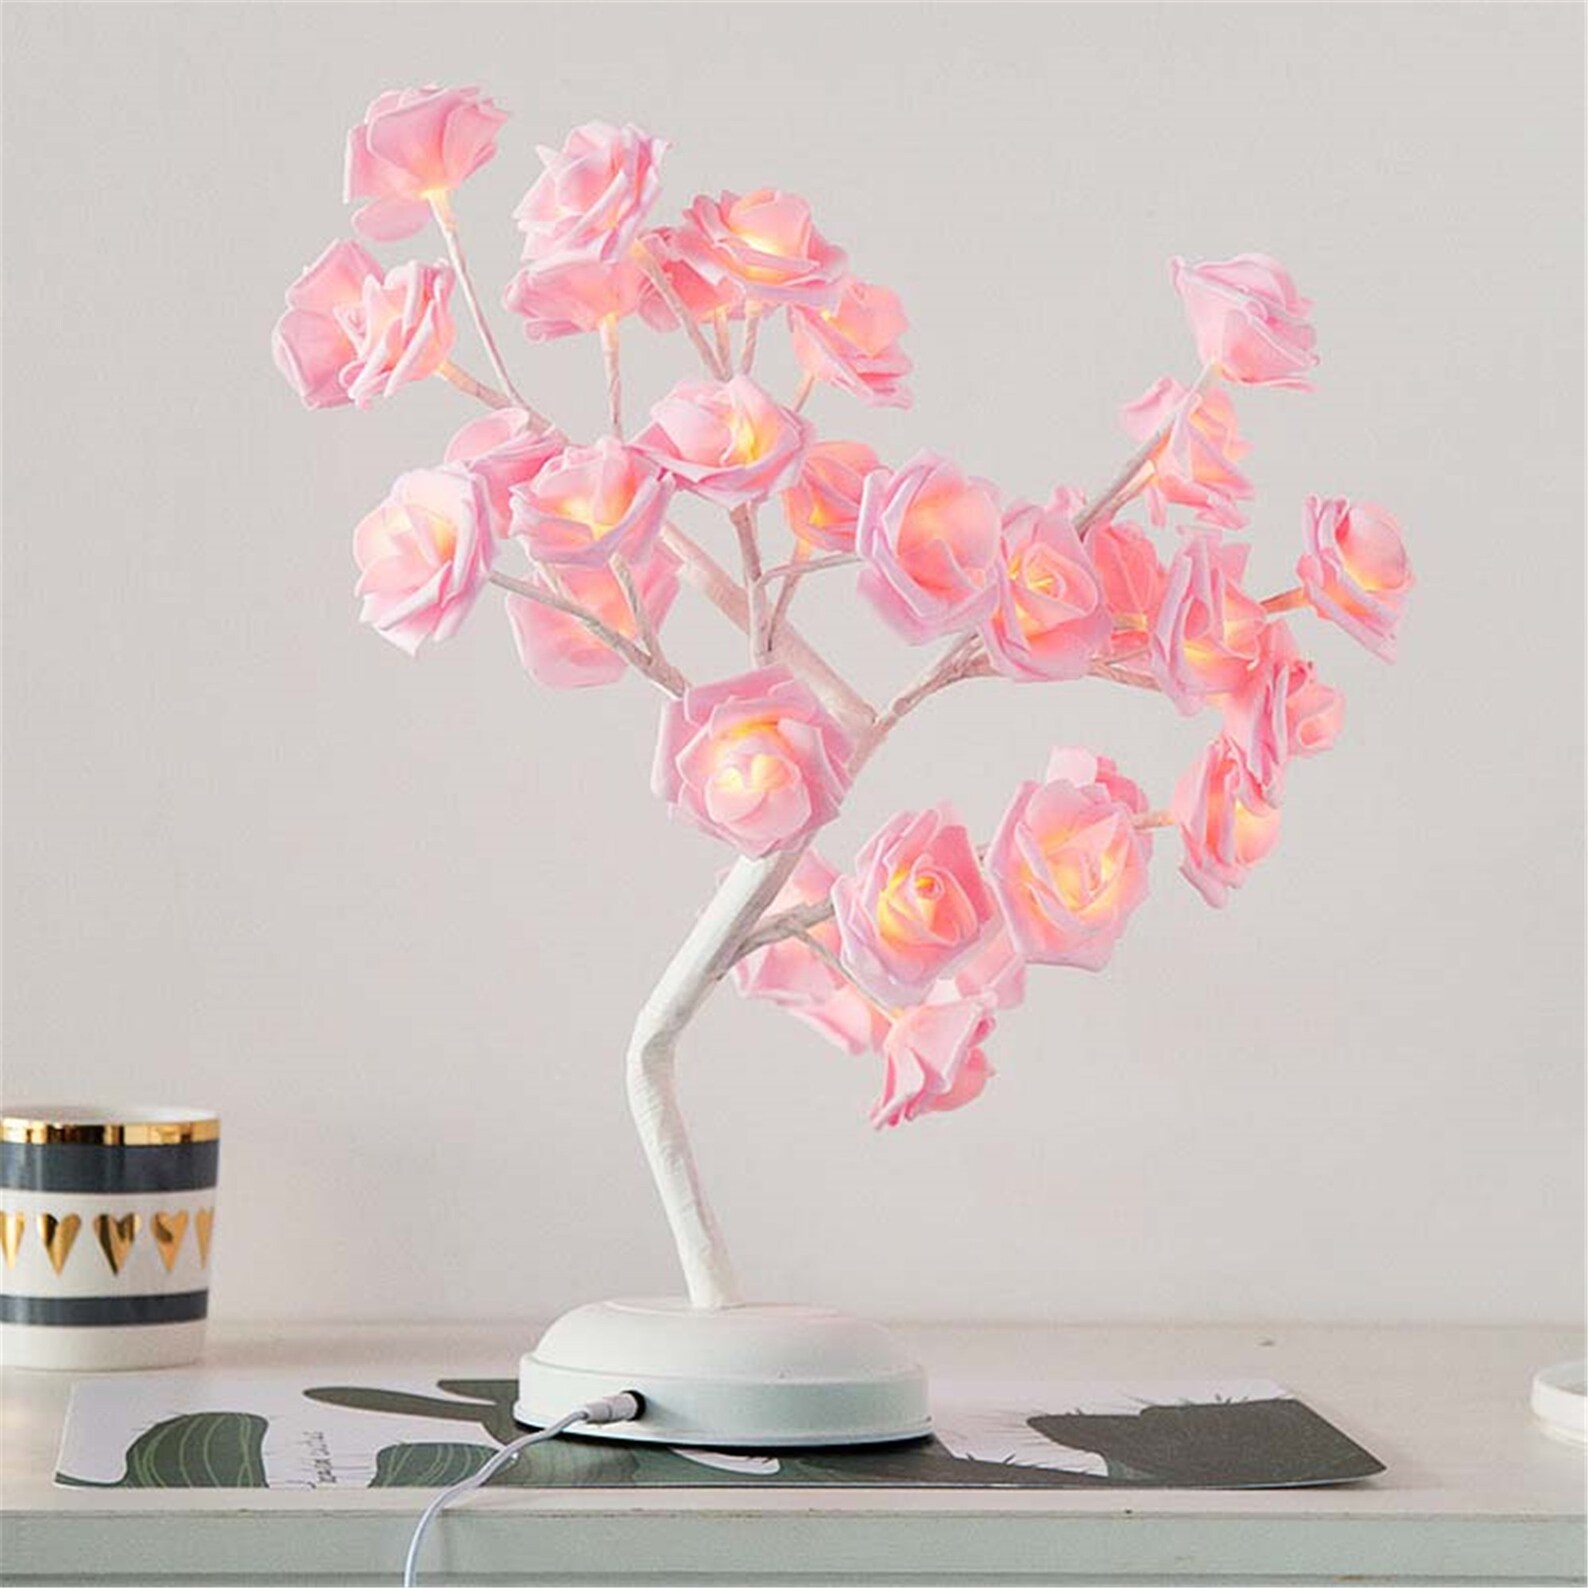 Handmade lamp rose table lamp gift | Etsy